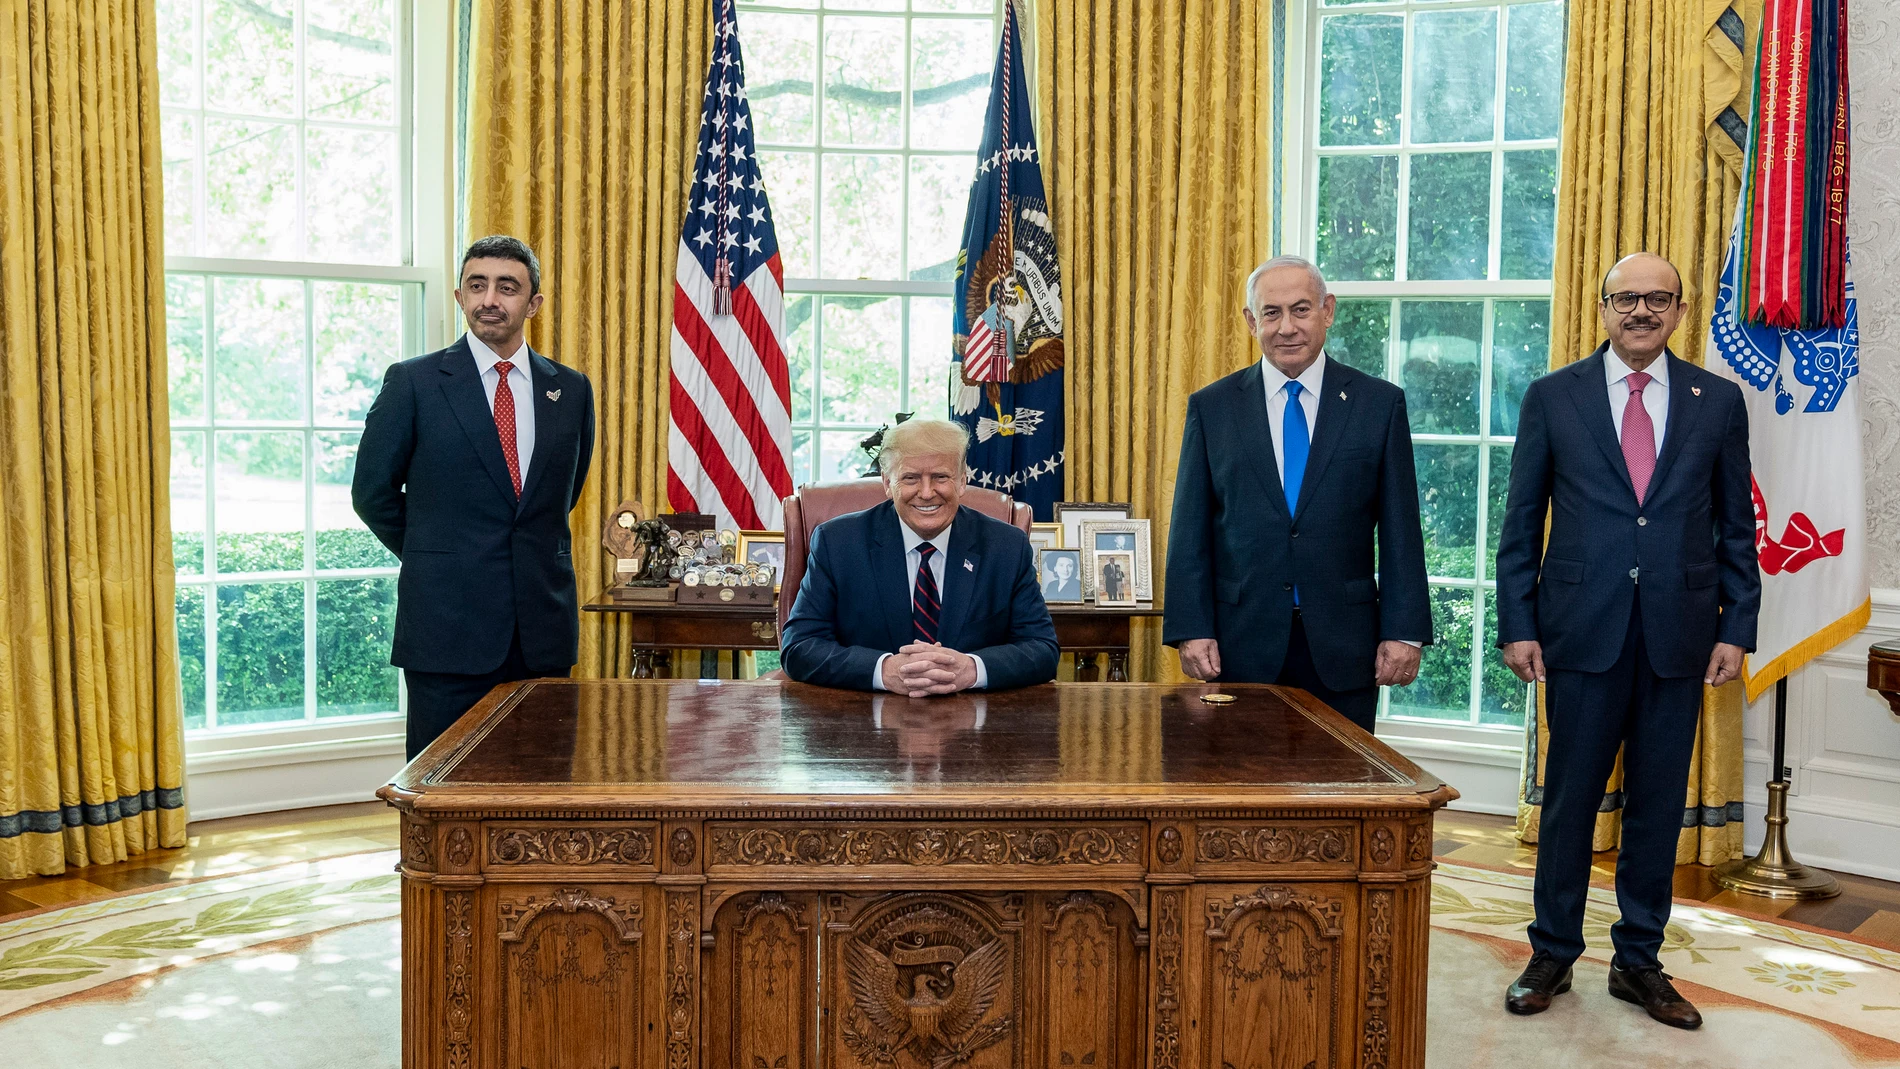 El presidente Donald Trump recibe al ministro de Exteriores emiratí, Abdullah bin Zayed Al Nahyan, al primer ministro israelí, Benjamin Netanyahu, y al ministro de Exteriores de Bahréin Abdullatif bin Rashid Al Zayani en la Casa Blanca